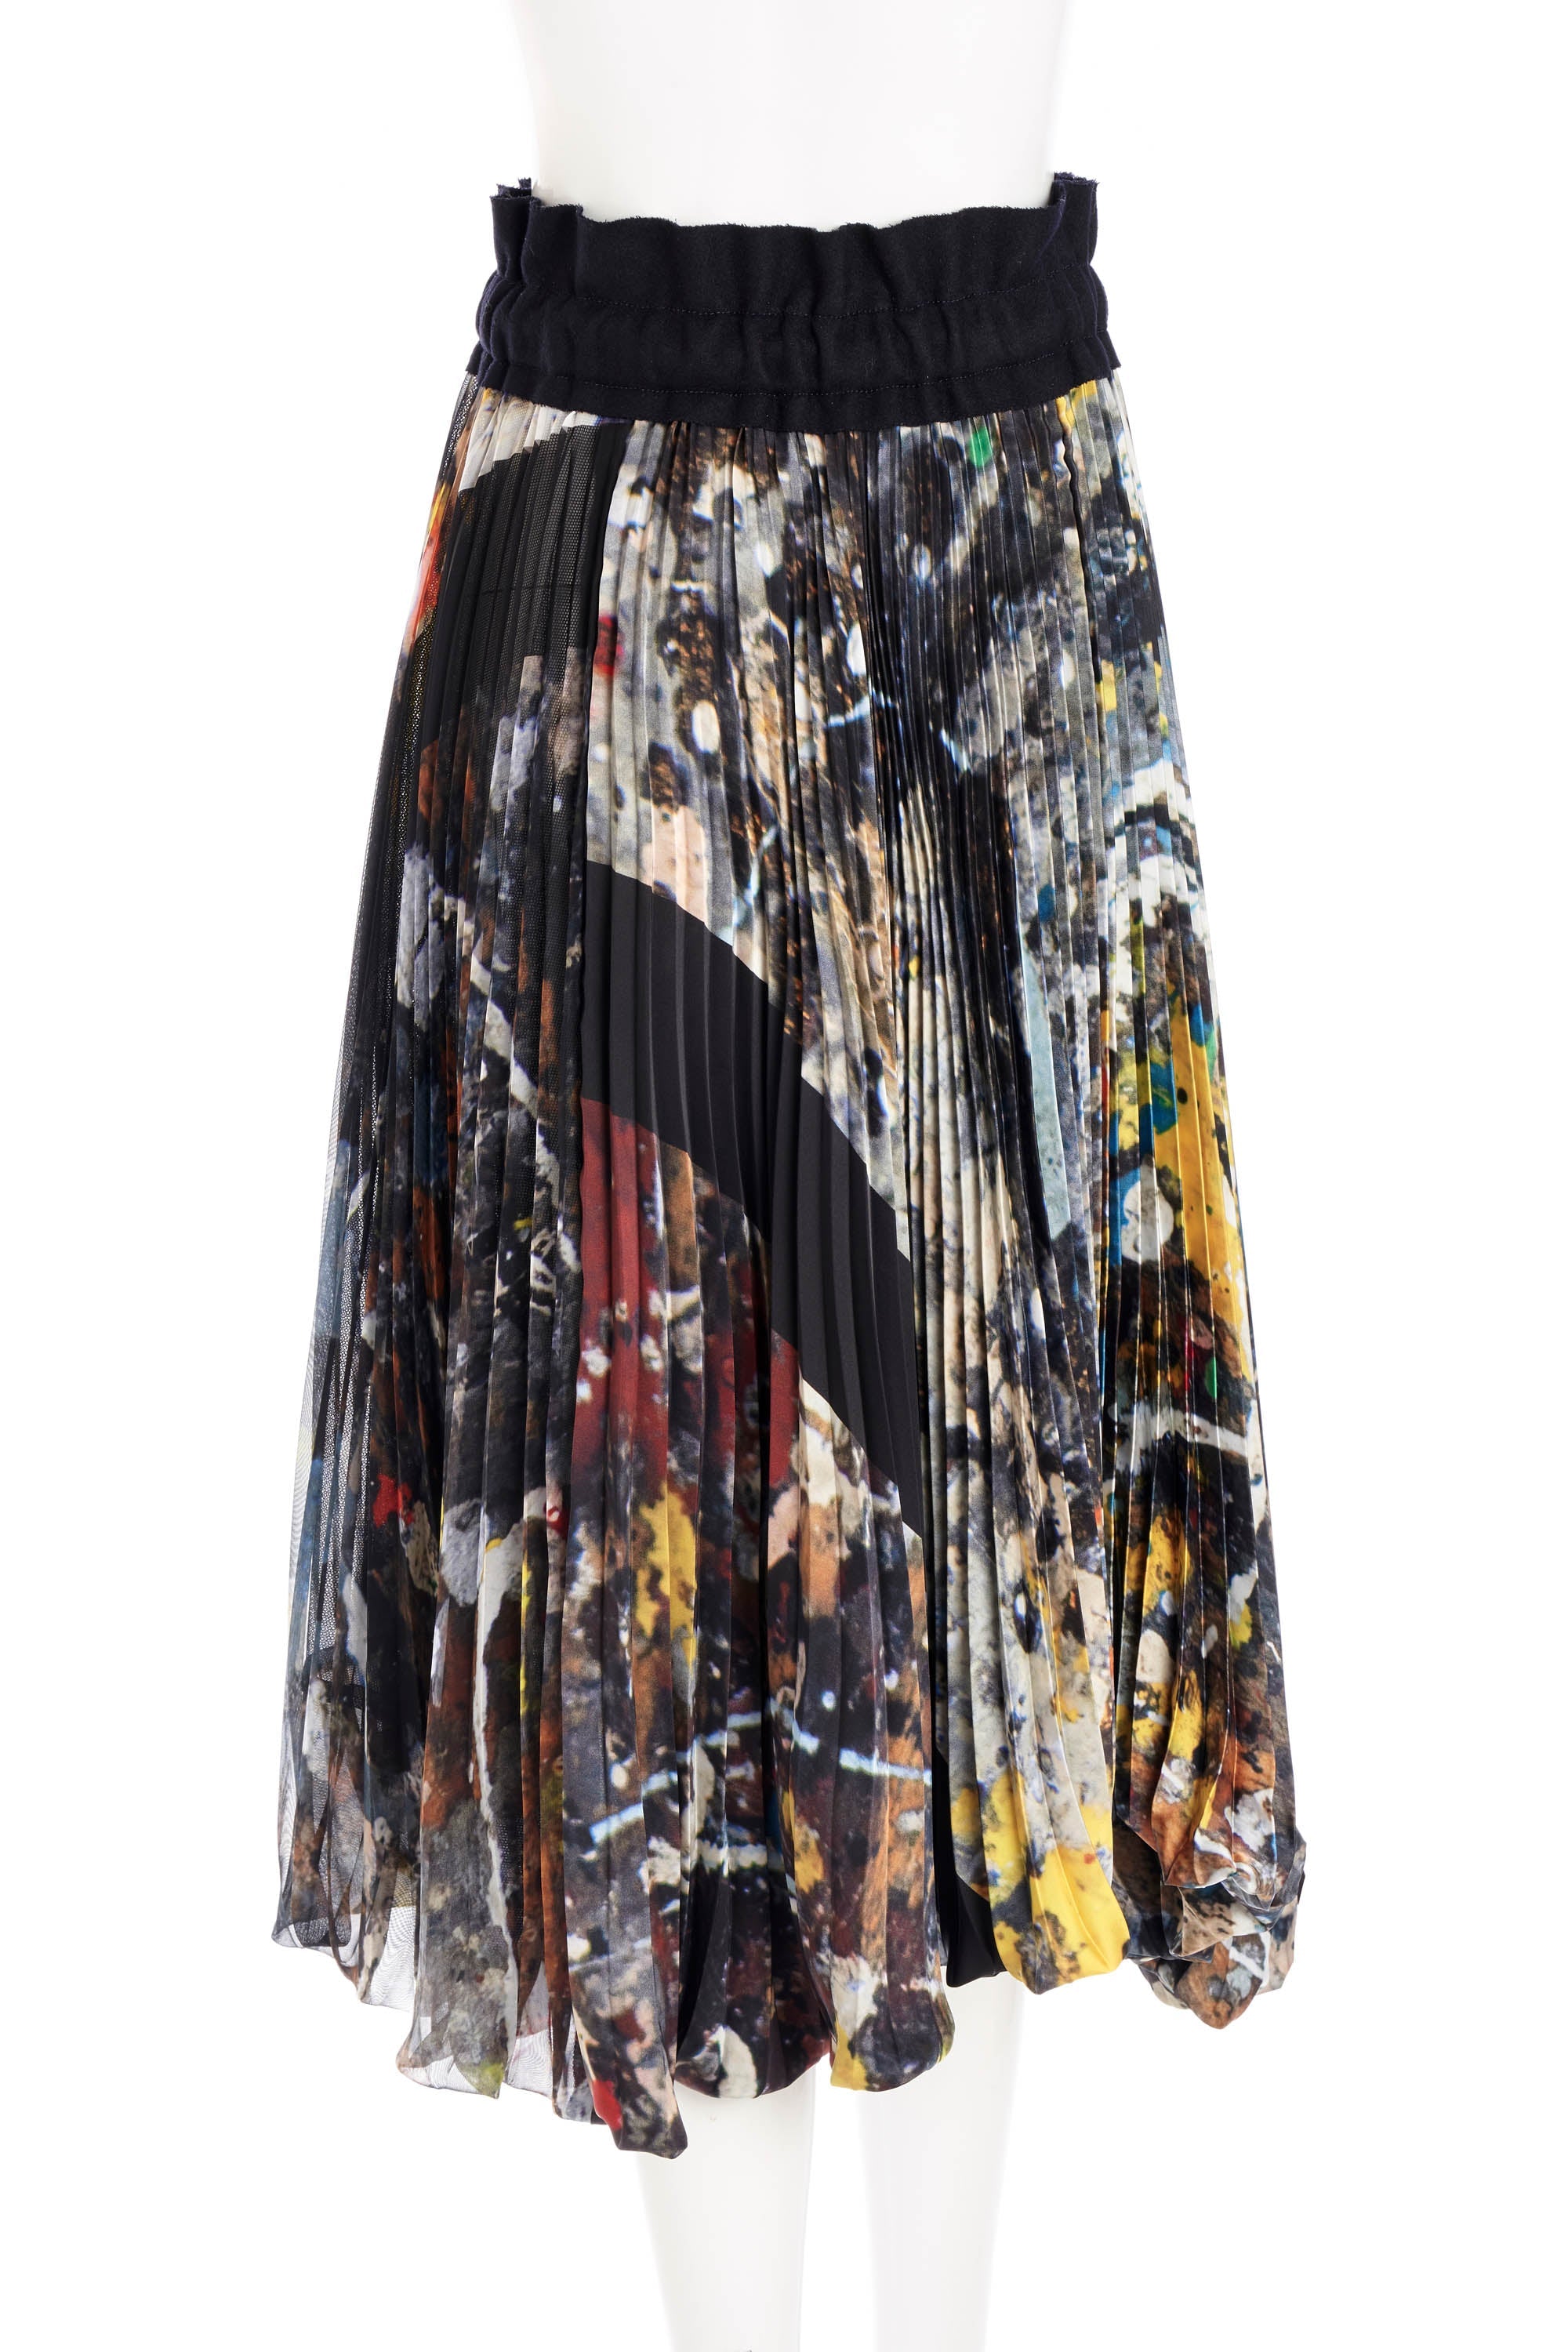 Sacai Pleated Jackson Pollock Skirt